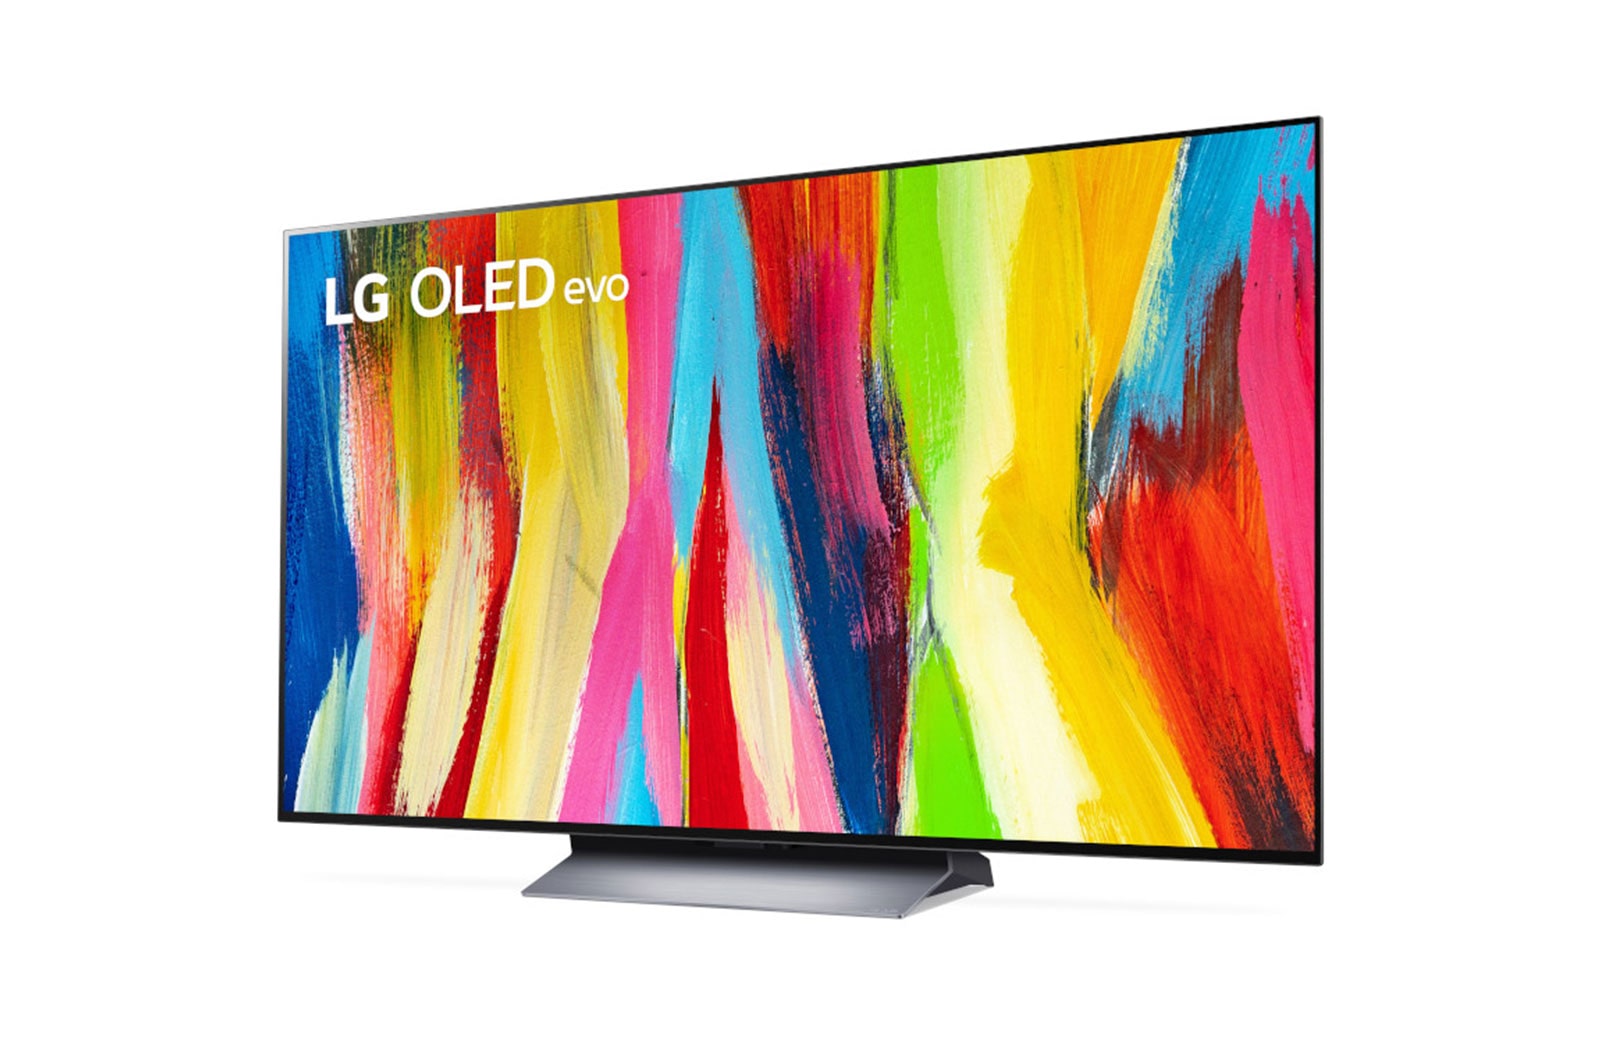 Stock image of LG OLED TV